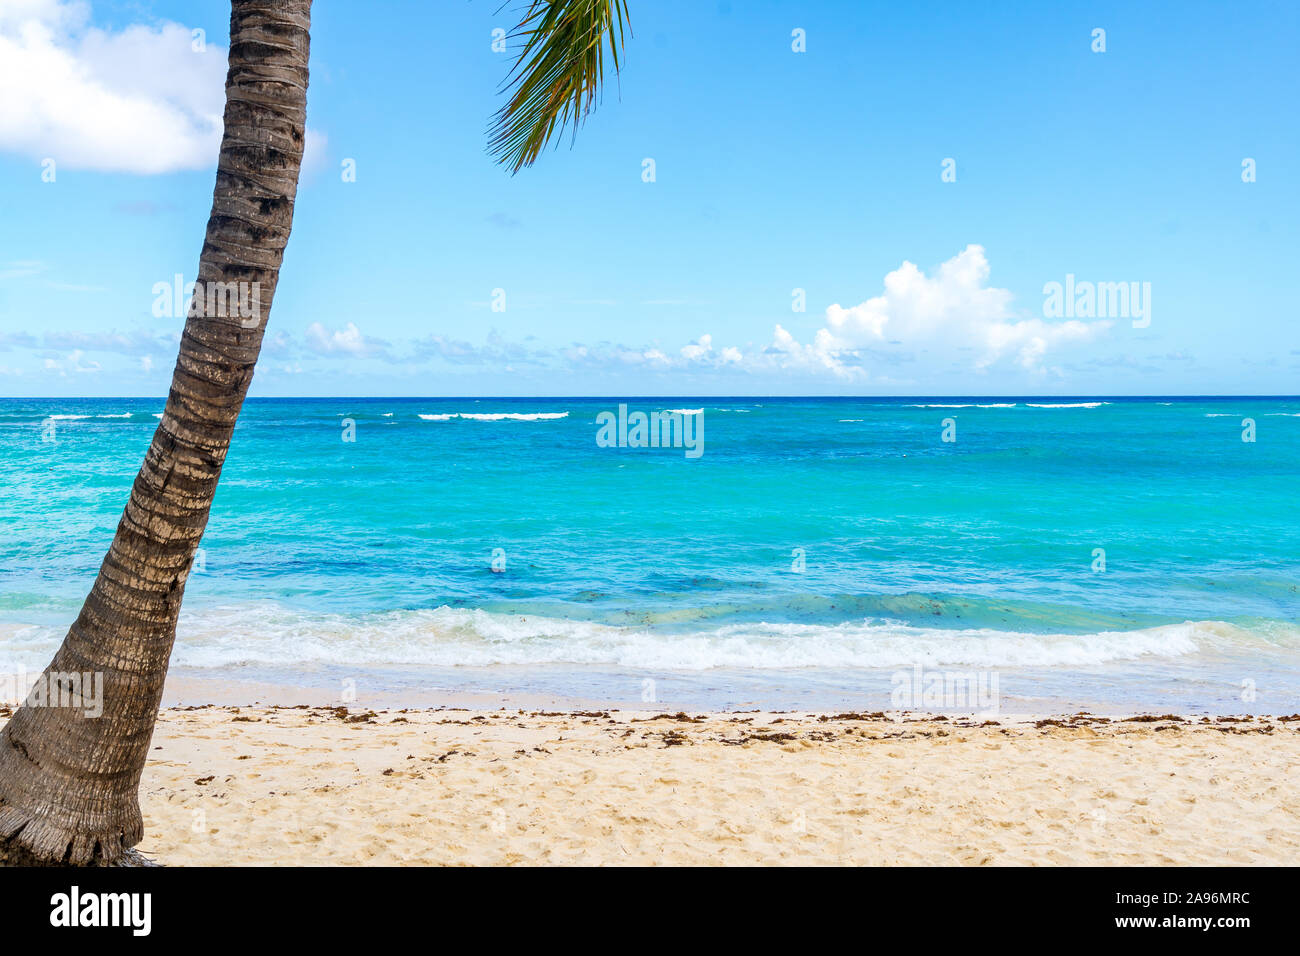 Turquesa prístina playa en Punta Cana, República Dominicana. Foto de stock